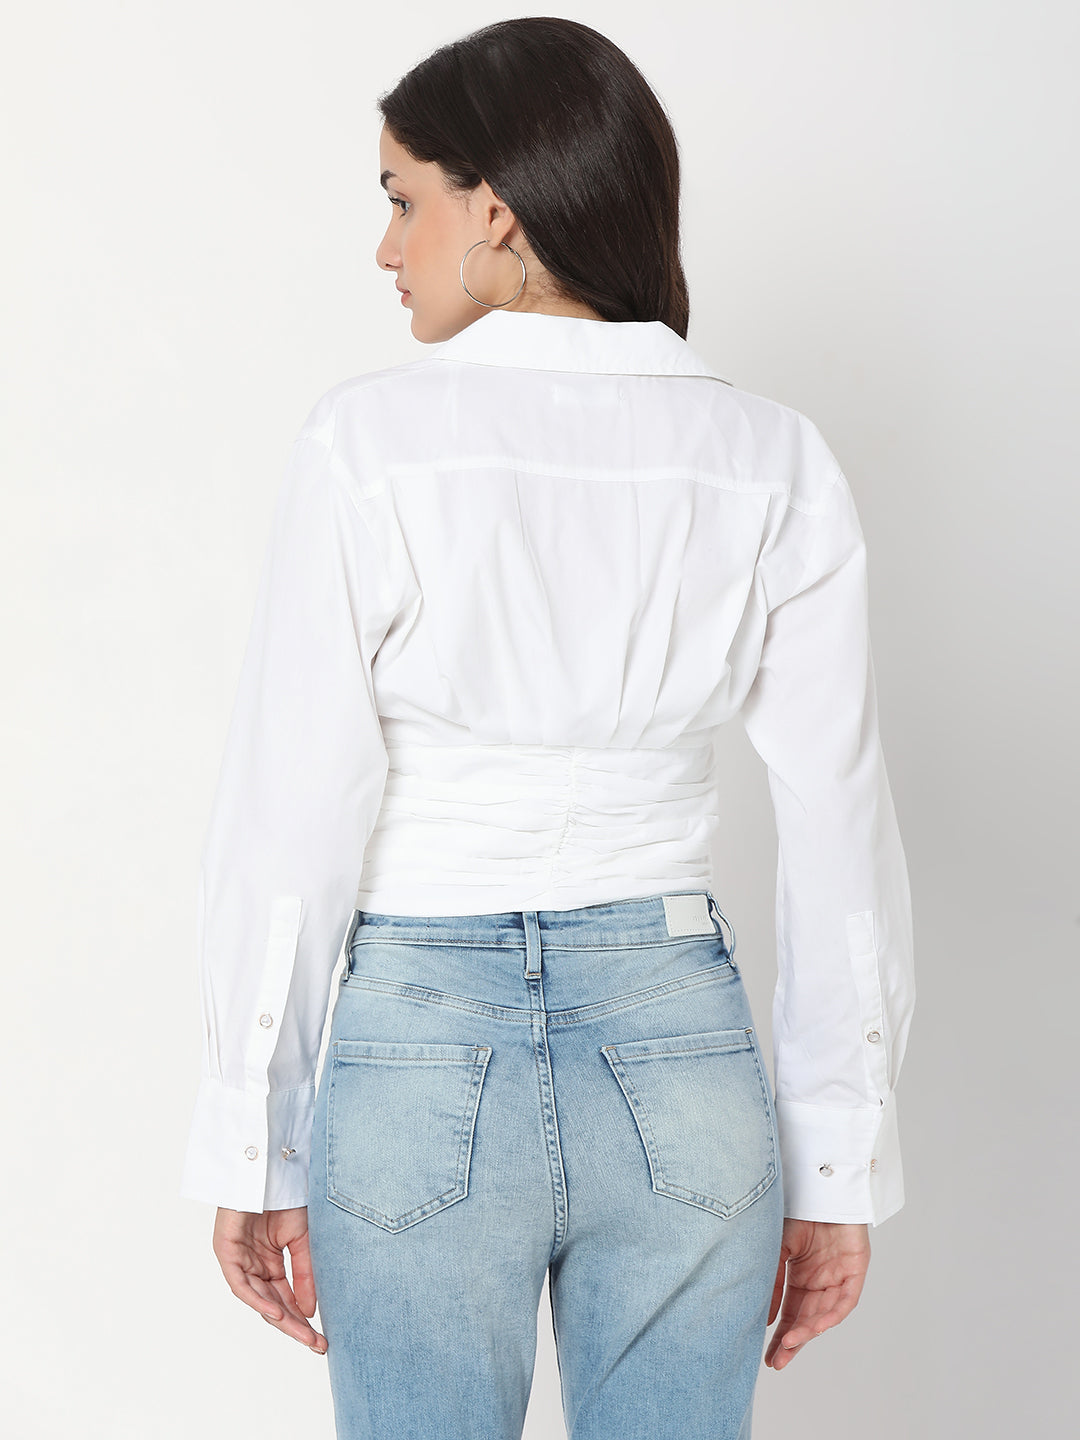 Spykar White Cotton Full Sleeve Plain Shirts For Women